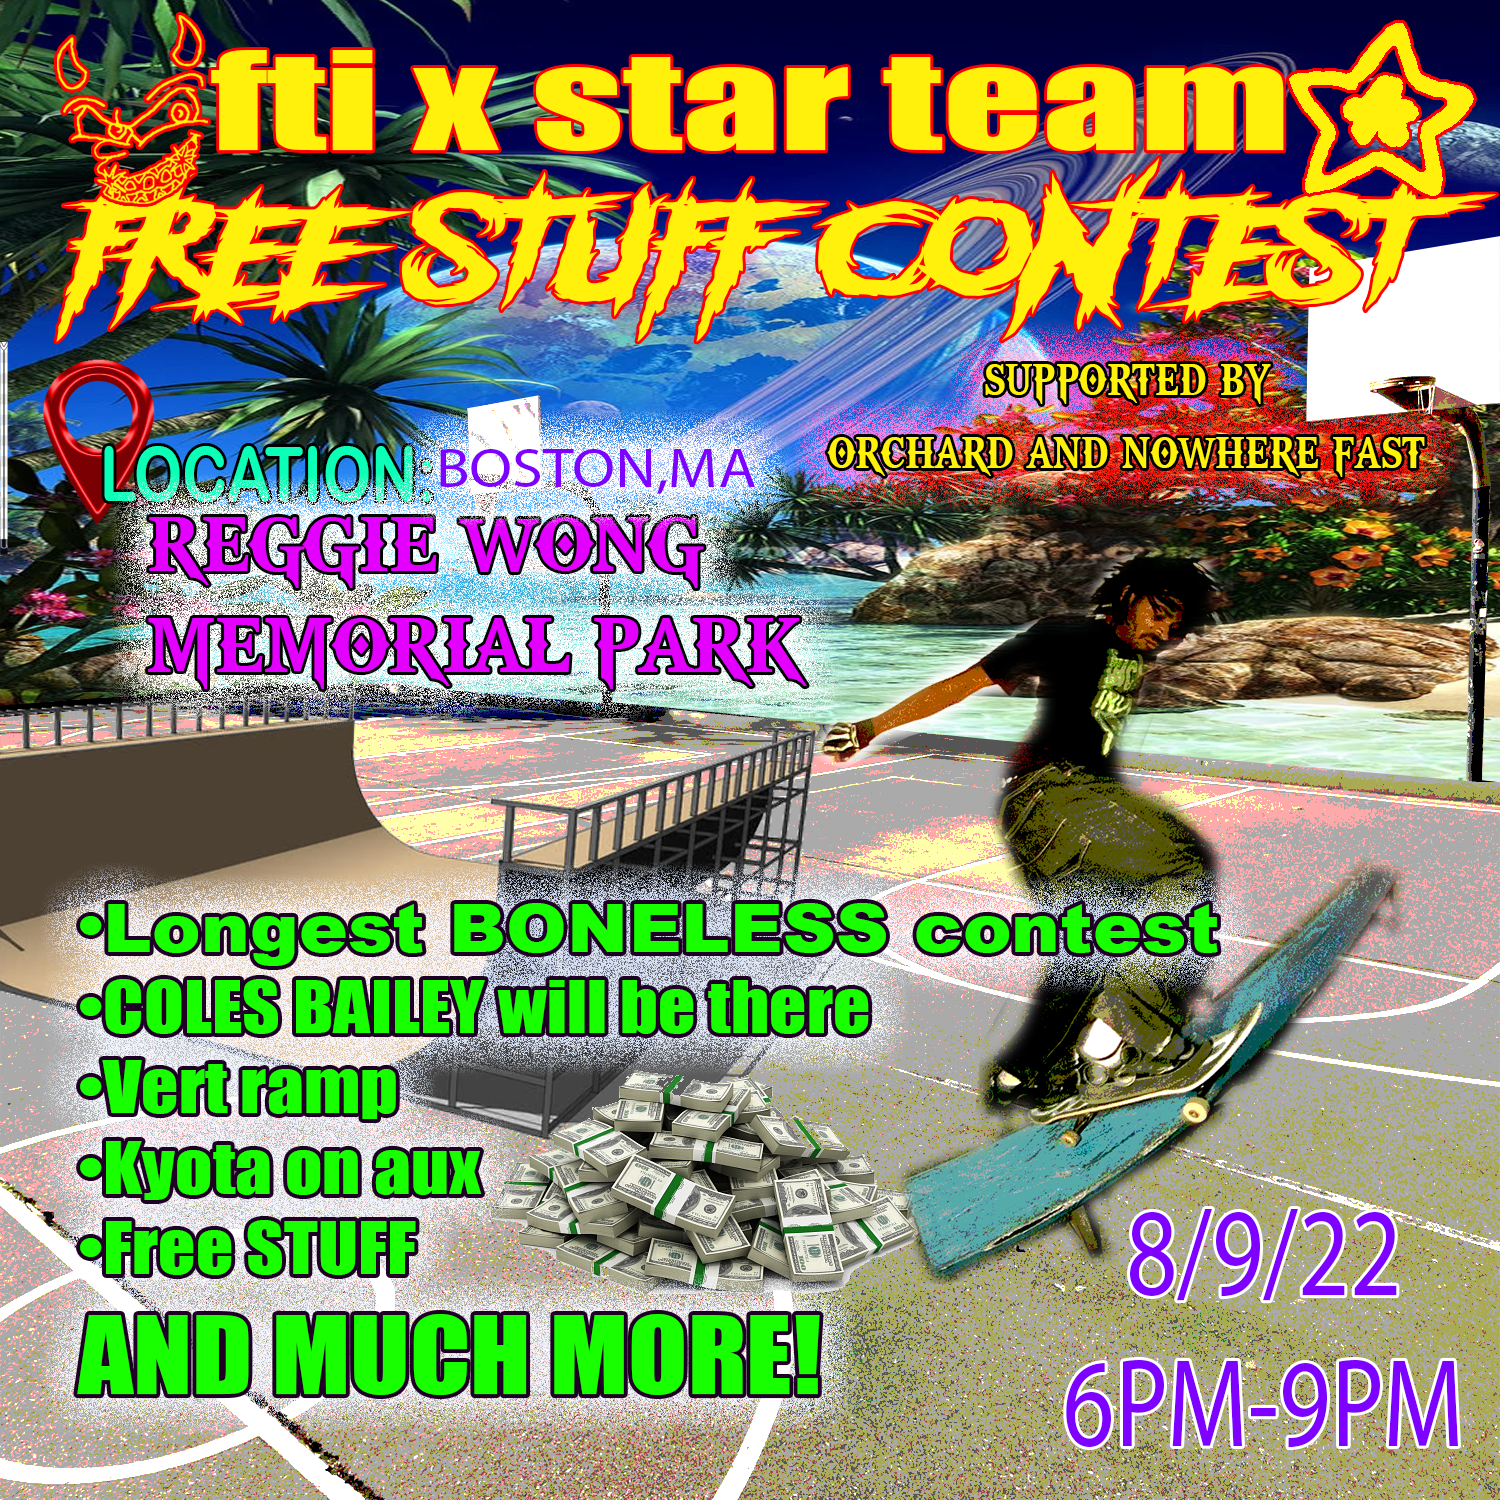 Star Team X FTI "Free Stuff Contest"